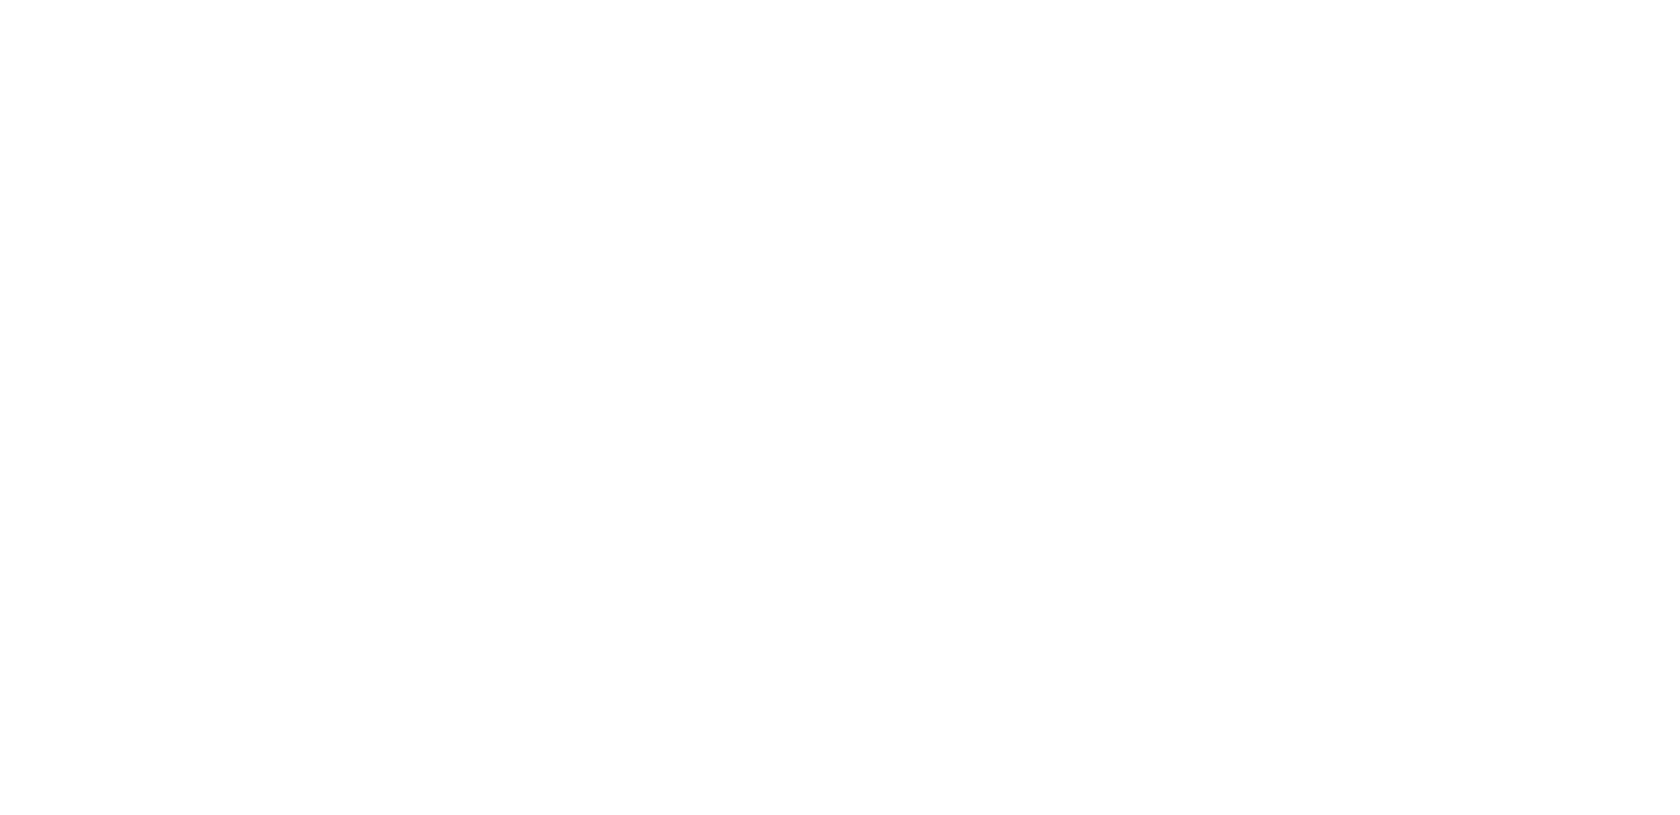  Eva Appel 